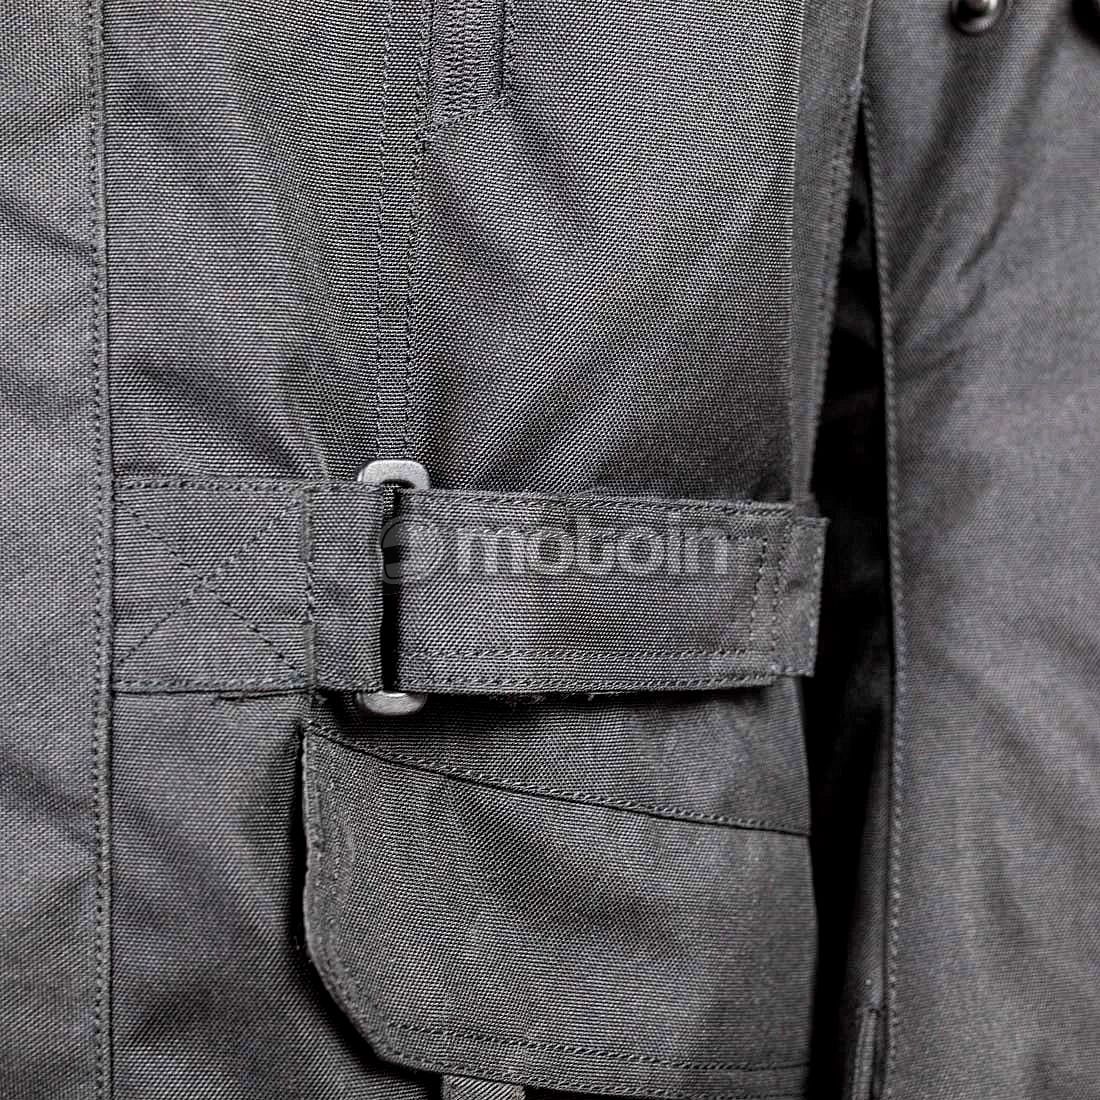 GMS-Moto Dayton, textile jacket waterproof